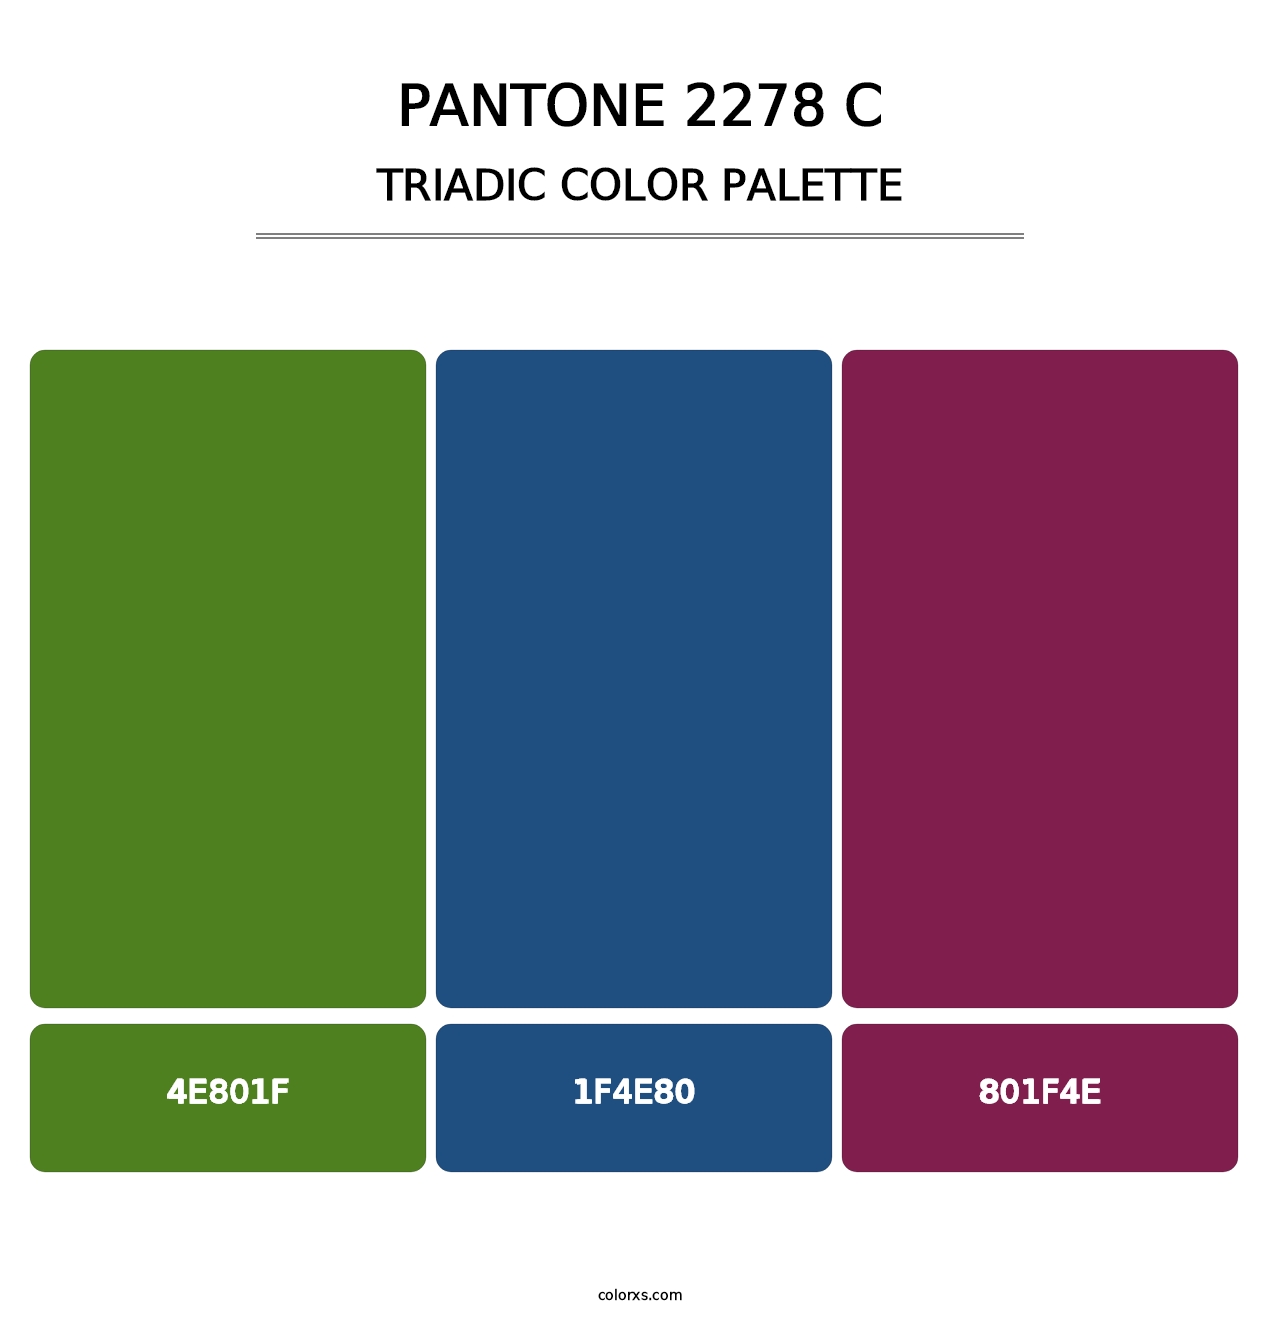 PANTONE 2278 C - Triadic Color Palette